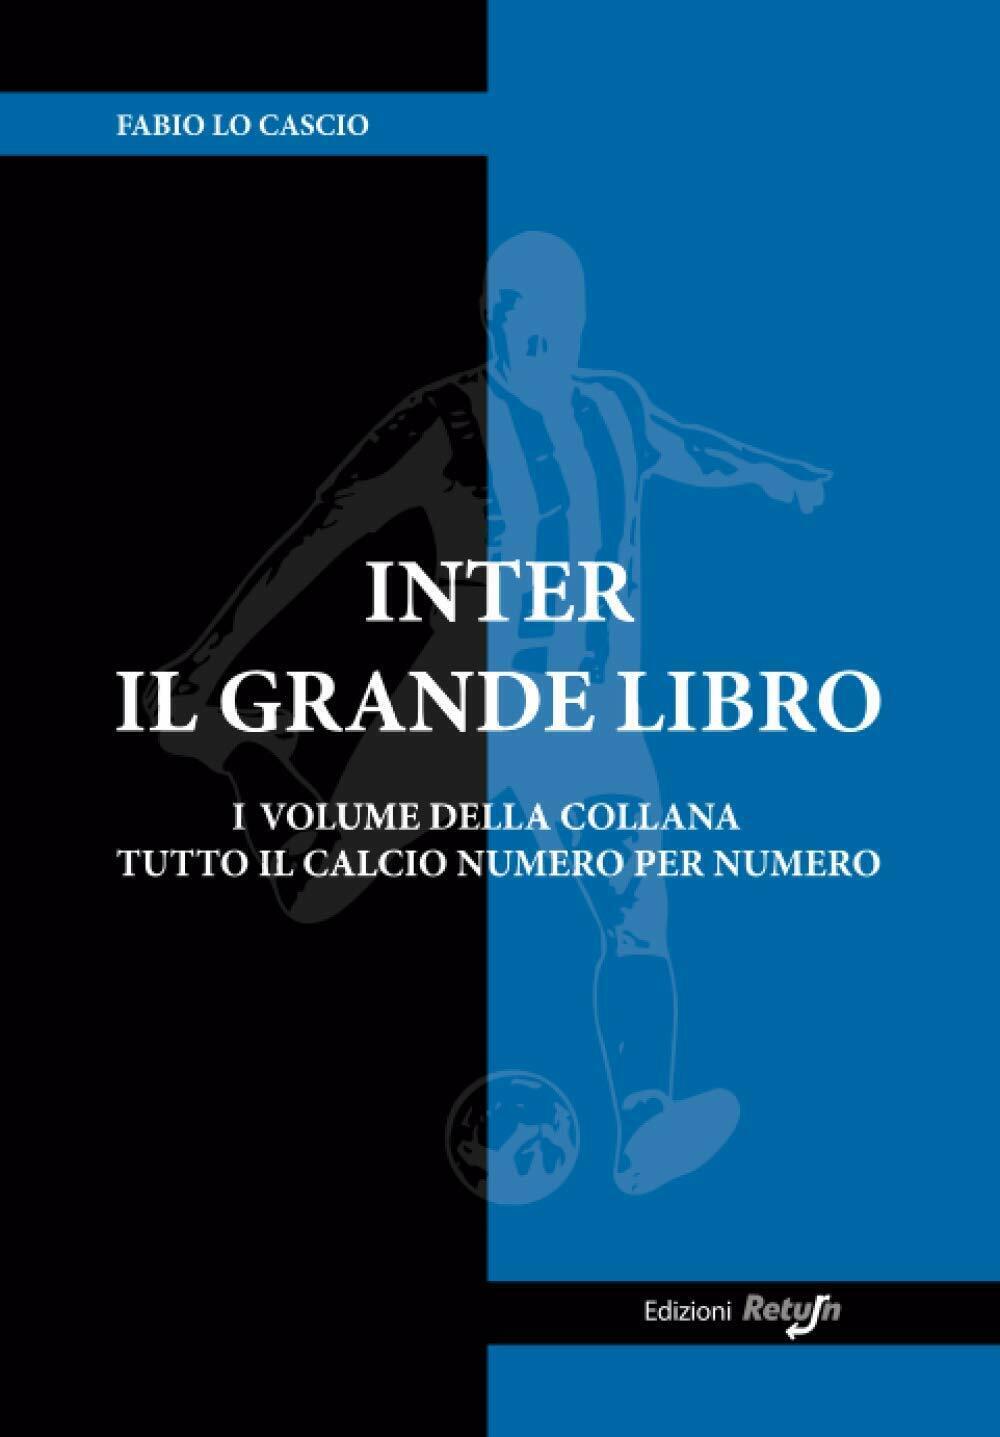 Inter il Grande Libro - Fabio Lo Cascio - Return, 2019 libro usato